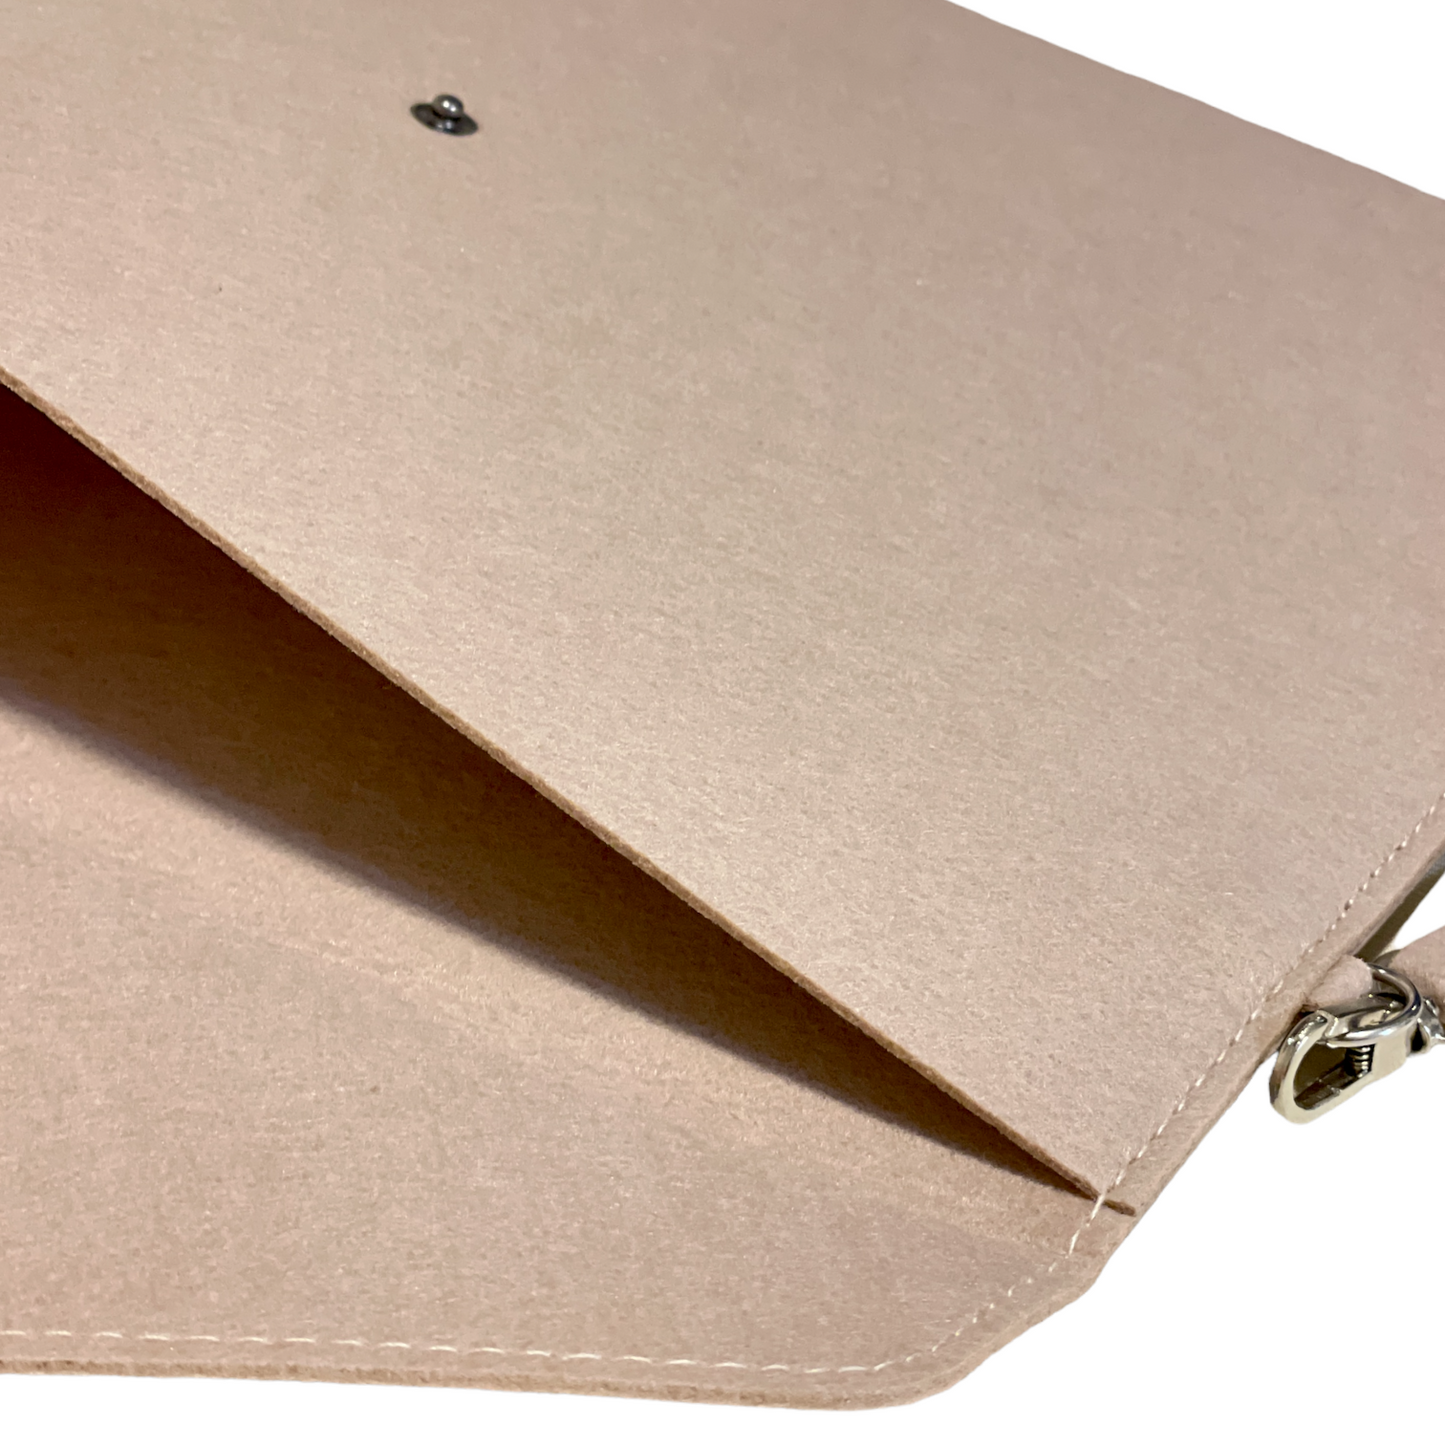 14" Felt iPad and Document Carry Folder